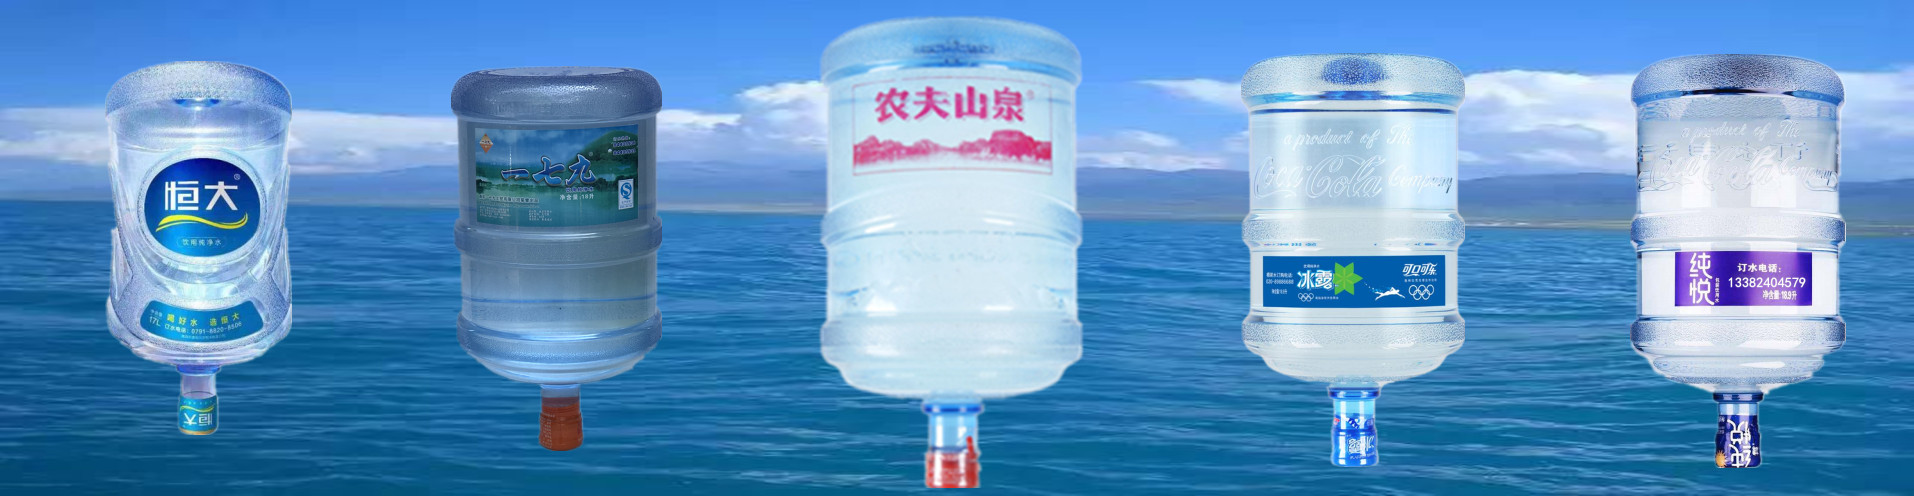 冰露纯悦|恒大桶装水|农夫山泉|南京送水电话